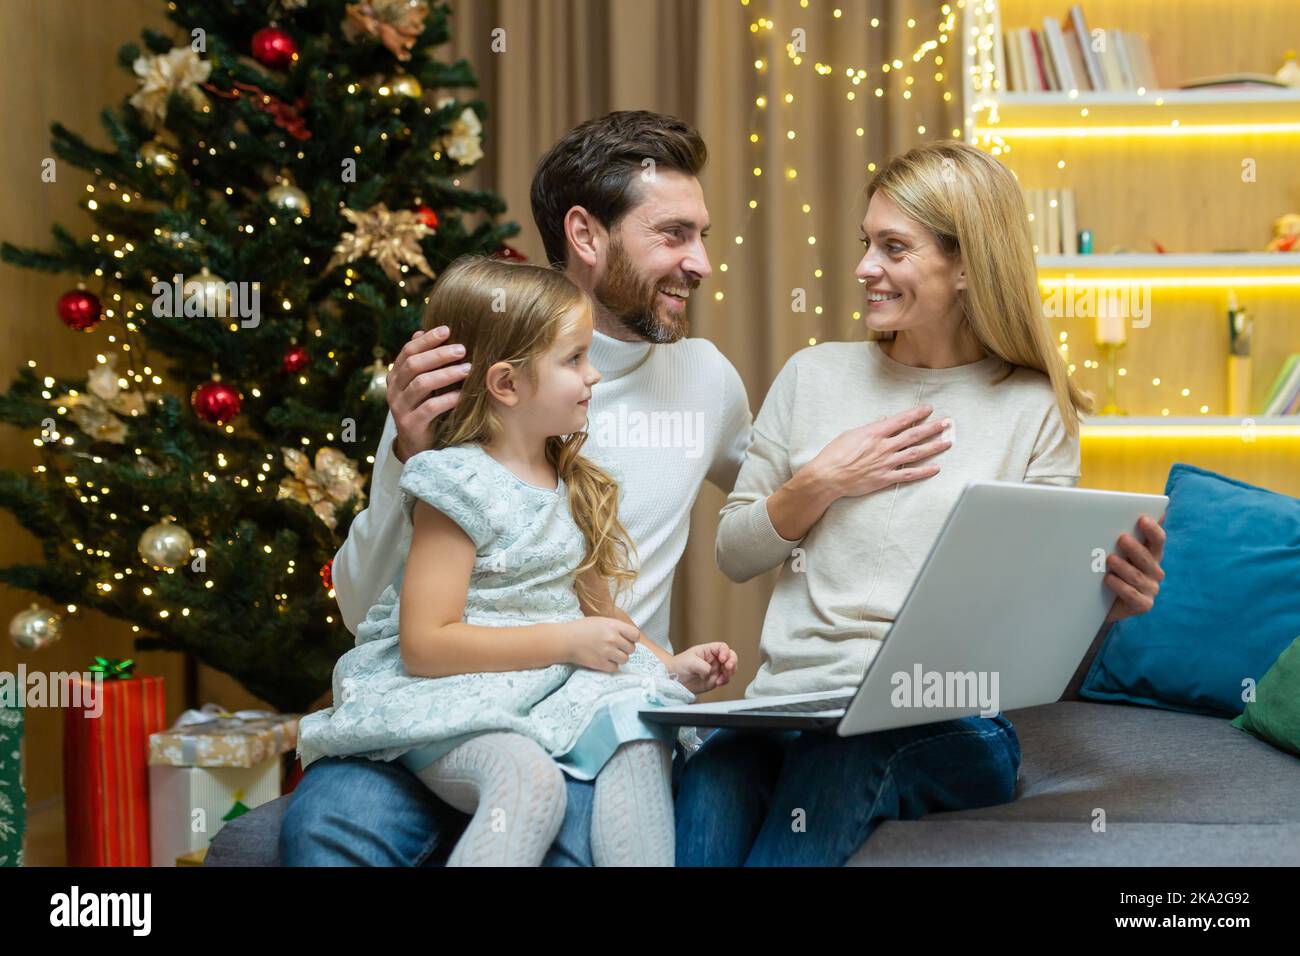 Les parents matures enseignent à leur enfant d'utiliser un ordinateur portable étudiant l'apprentissage en ligne de la navigation sur Internet ensemble, assis sur le canapé dans le salon arrière-plan arbre de Noël père et mère avec enfant fille. Banque D'Images